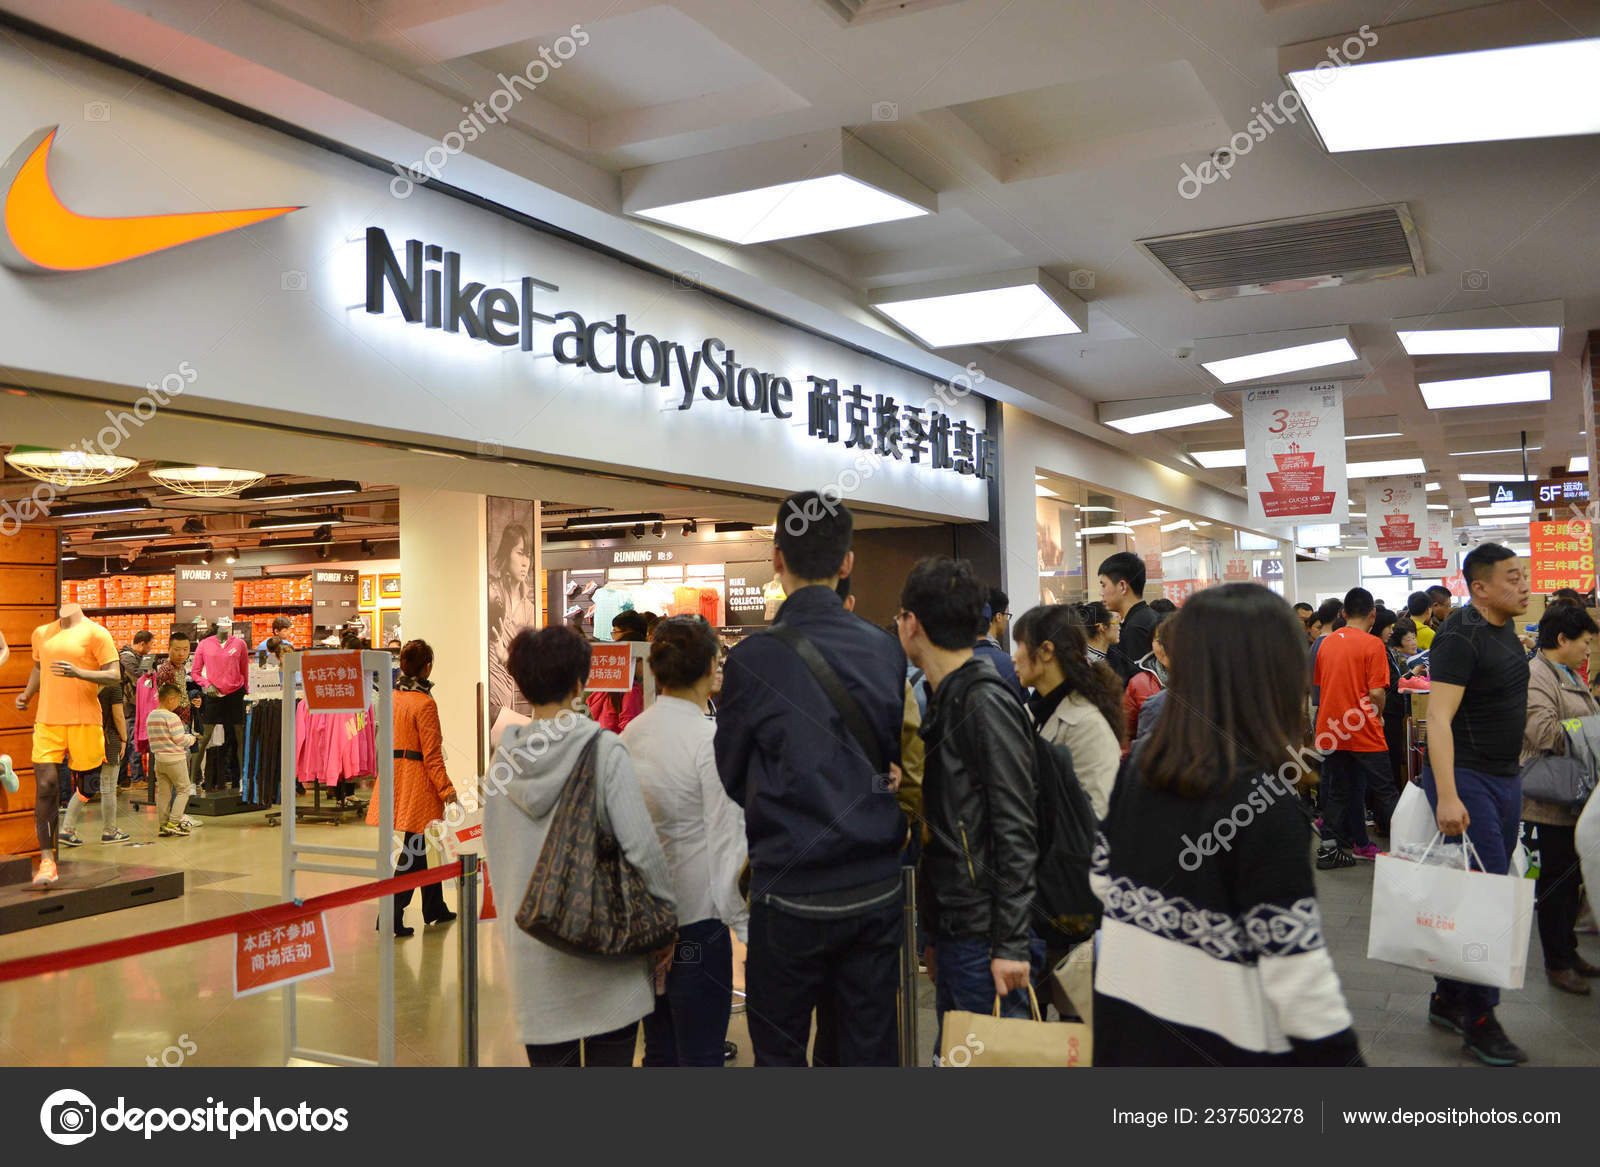 ballena Último Arqueología Clientes Chinos Hacen Cola Frente Una Tienda Nike Factory Store — Foto  editorial de stock © ChinaImages #237503278